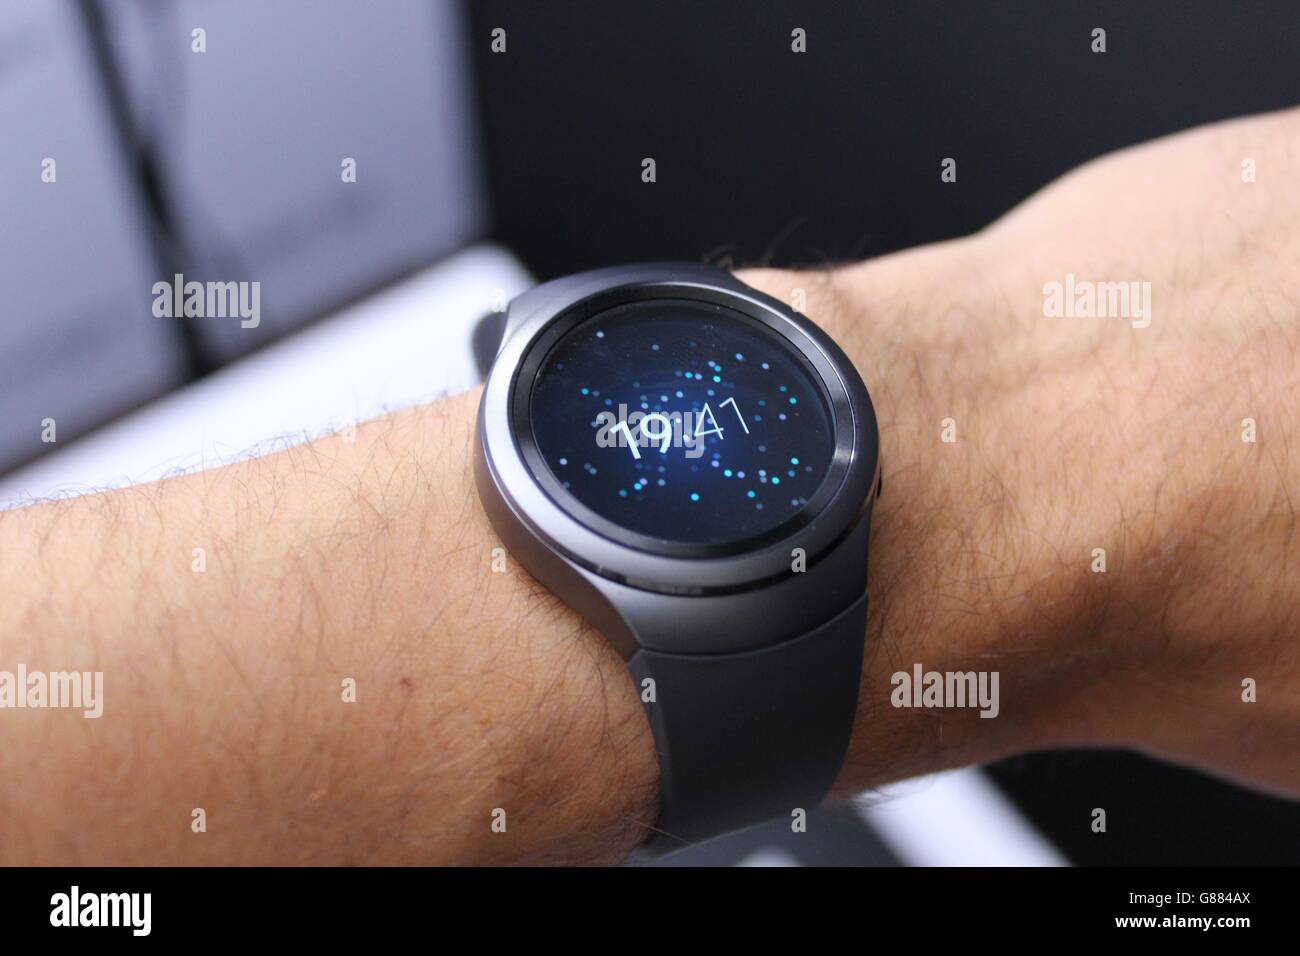 Lo smartwatch Samsung Gear S2 ha la sua prima uscita pubblica alla fiera di elettronica IFA di Berlino. Foto Stock